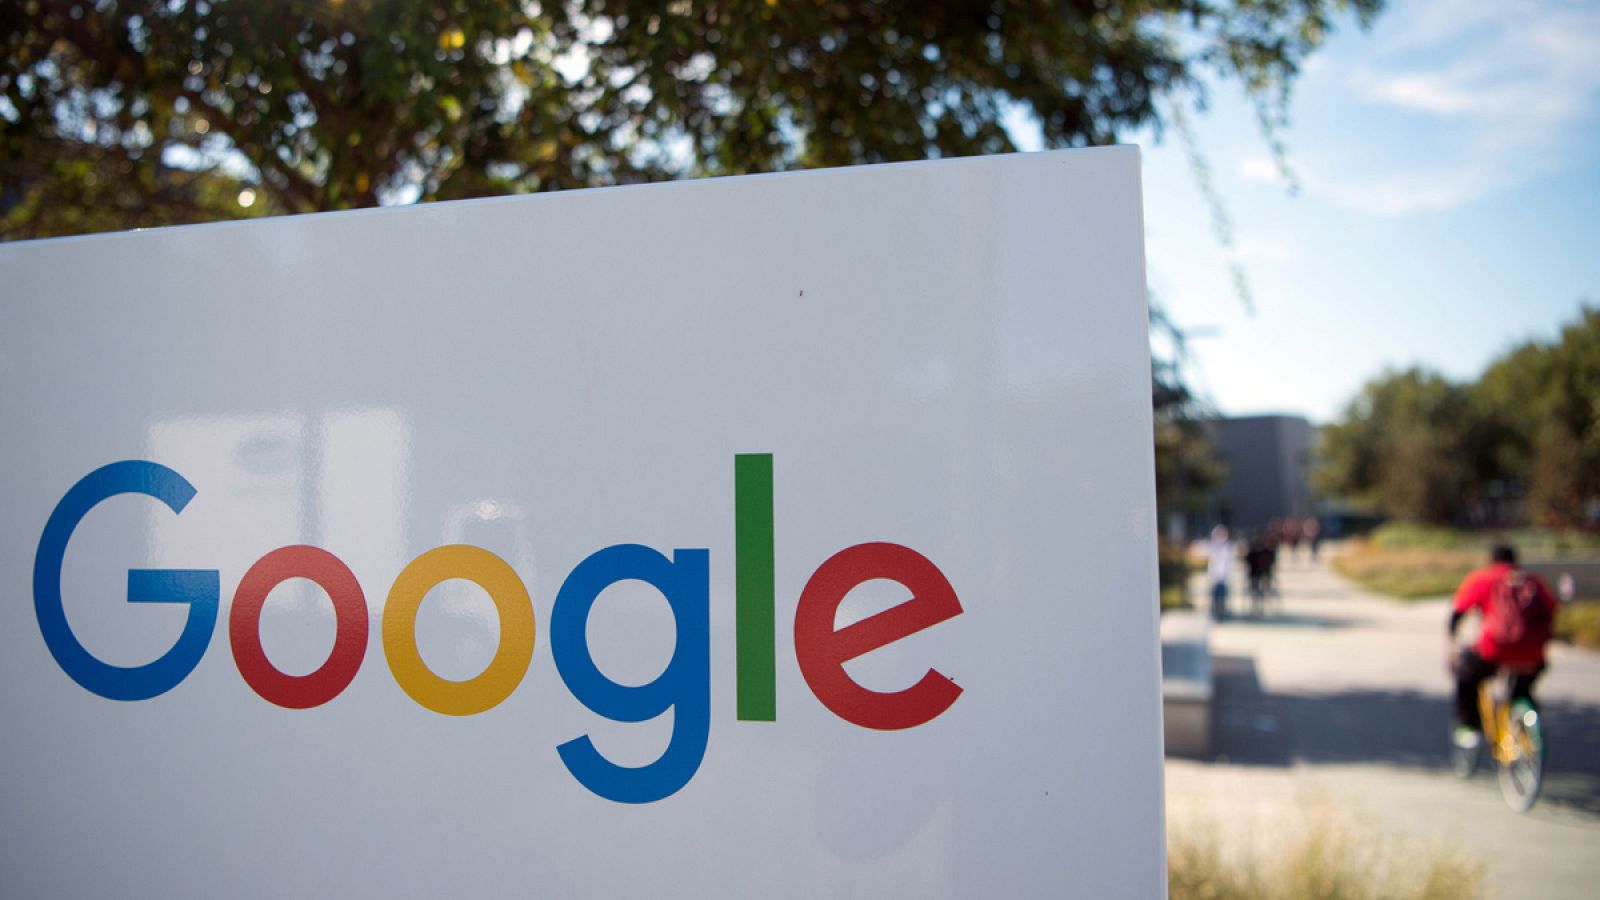 Google ha recibido acusaciones por búsquedas relacionadas con Donald Trump y el apoyo popular.